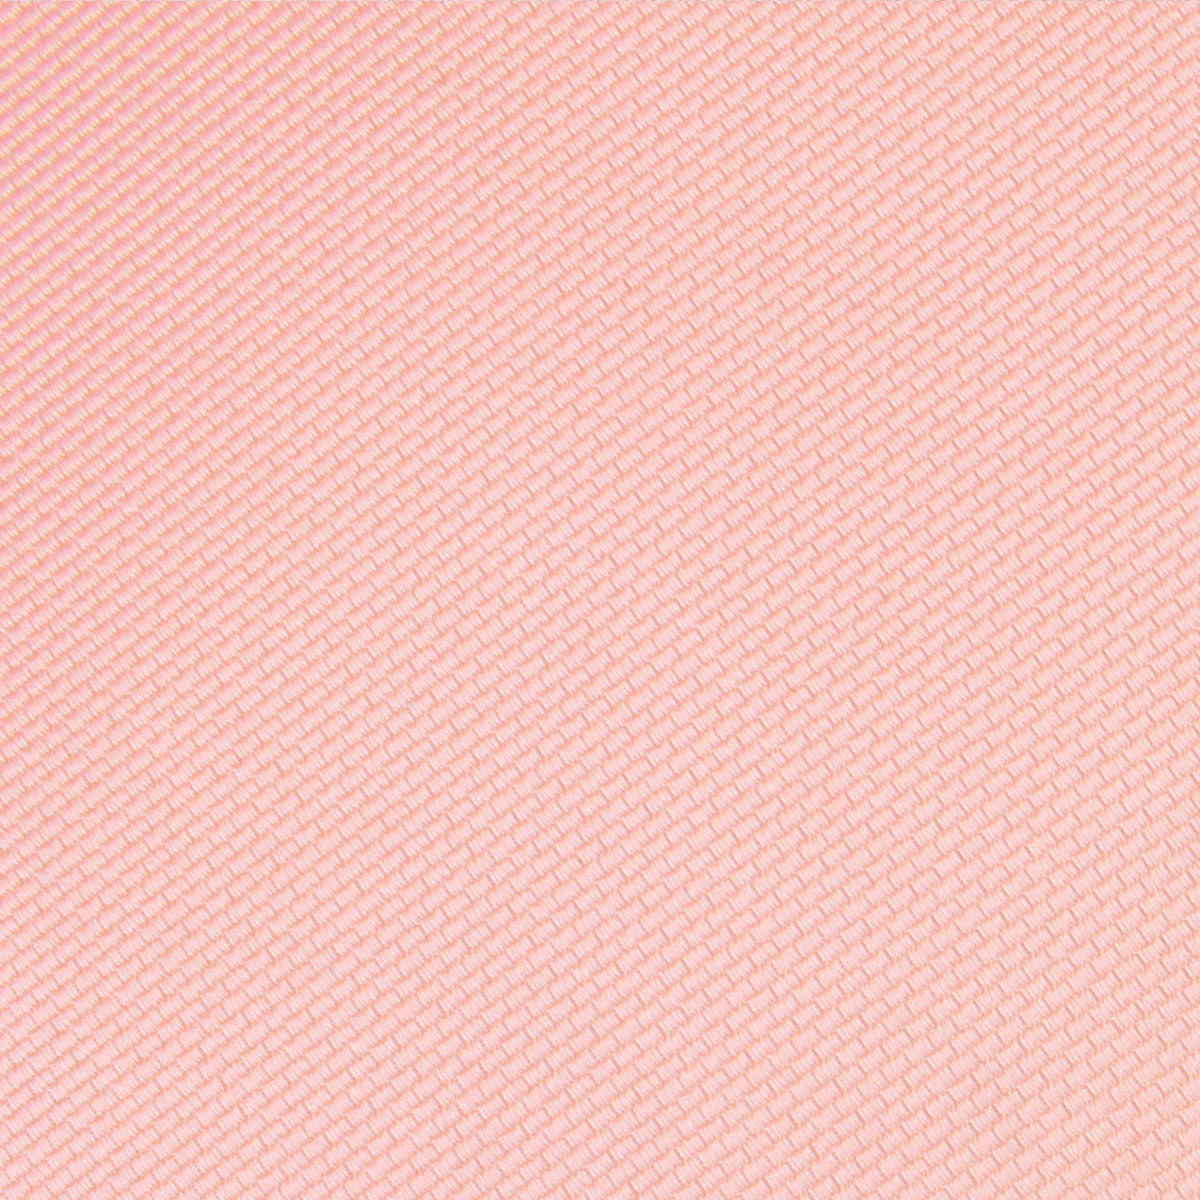 Bellini Peach Weave Pocket Square Fabric